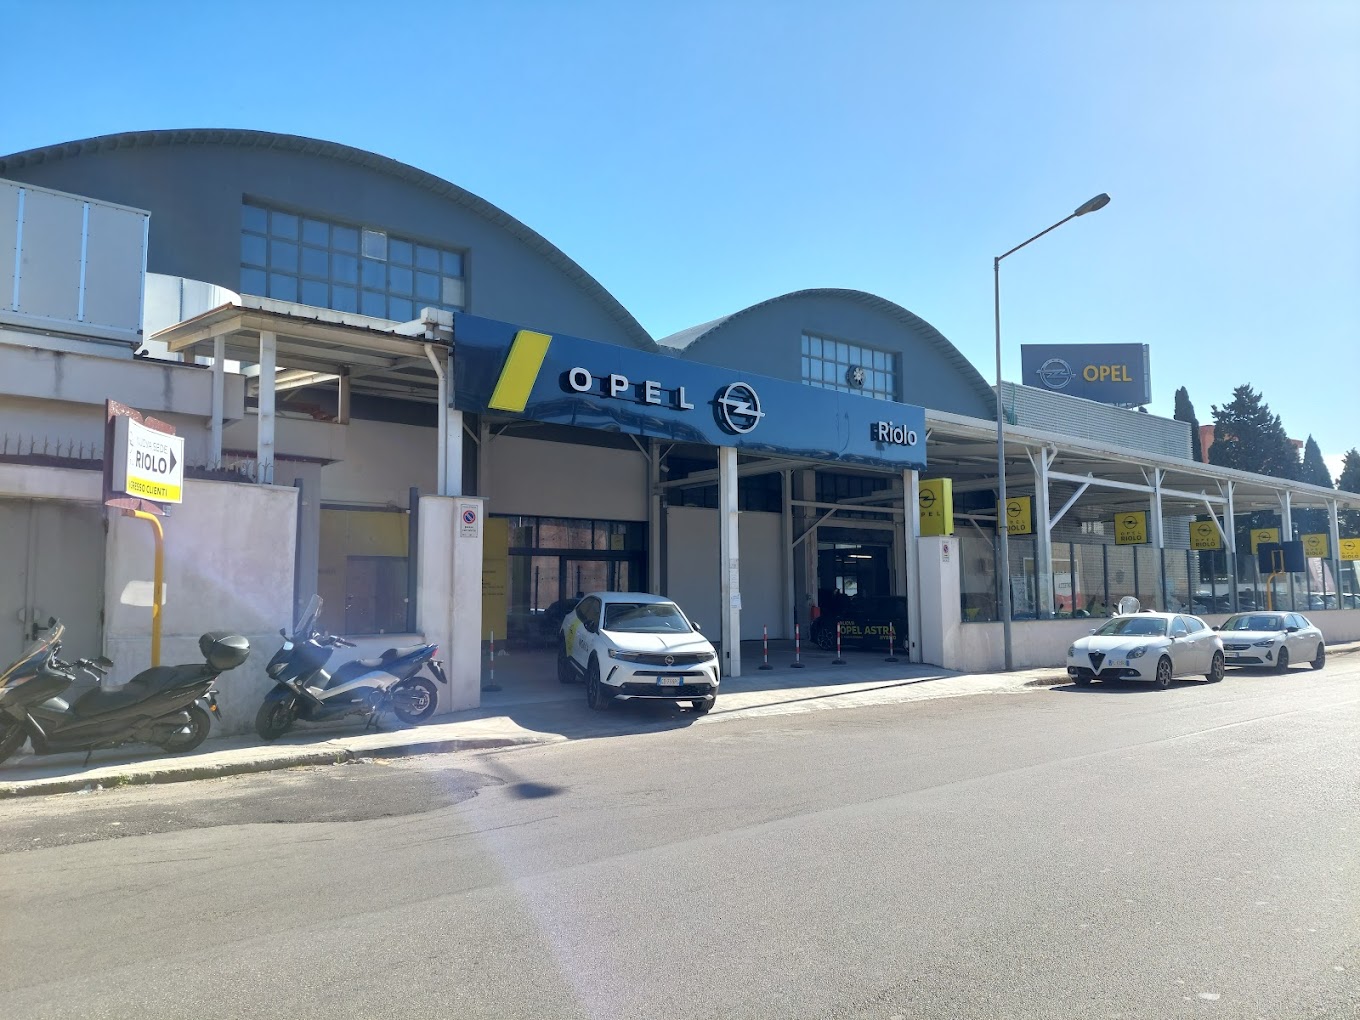 Opel Riolo Automobili